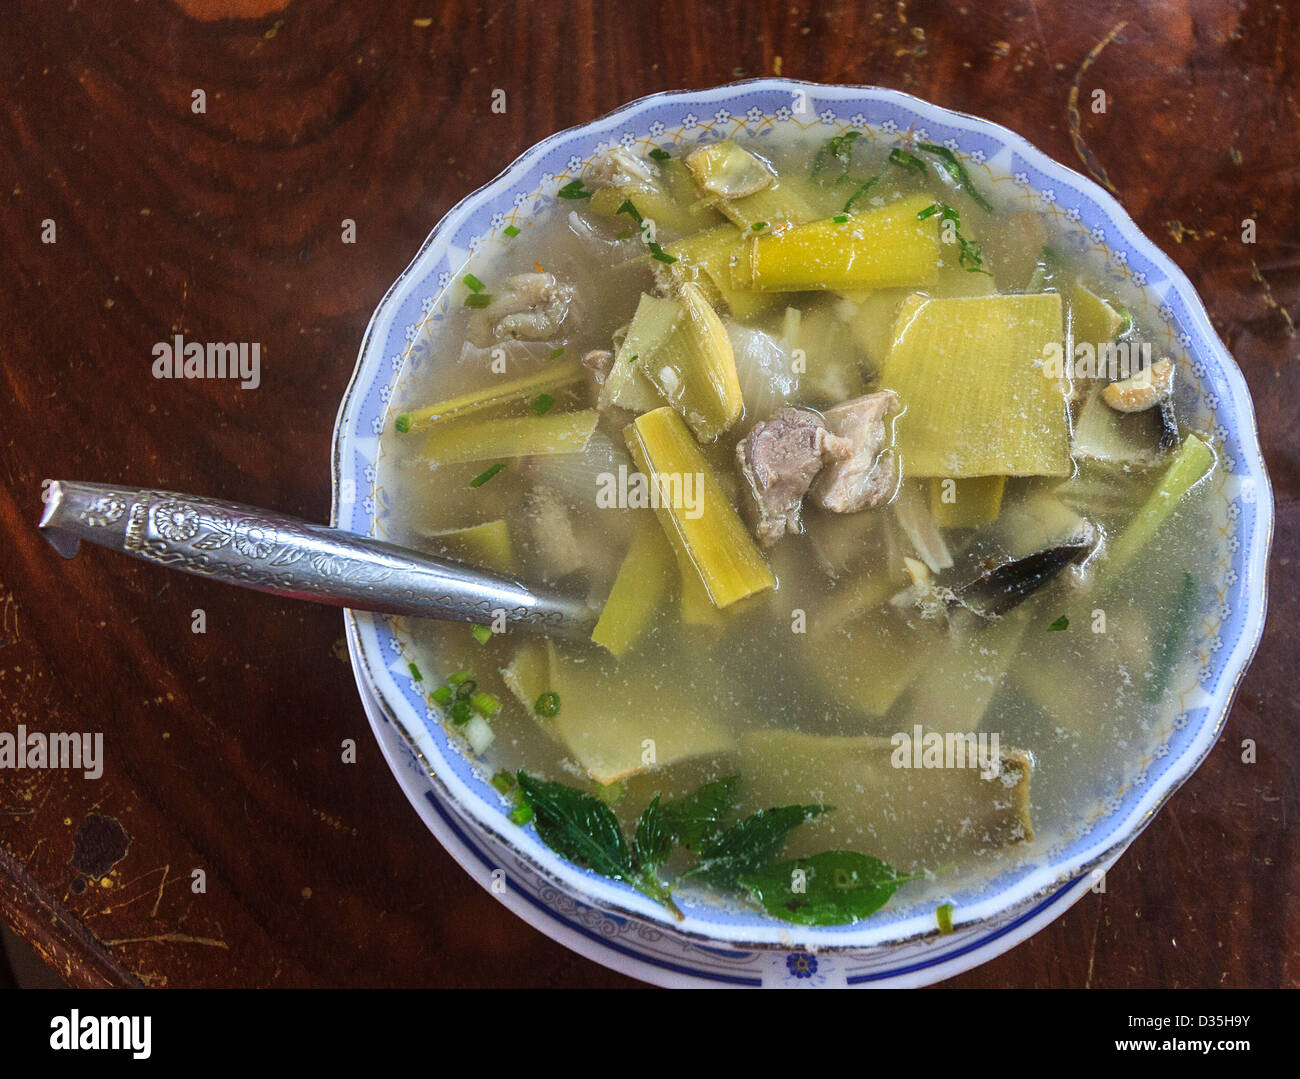 Saure Suppe, ein Khmer-Gericht, das eine Vielzahl von Fleisch haben kann. Hier hat die Suppe Huhn, Blätter und Blüten, Banane Kalk. Kambodscha. Stockfoto